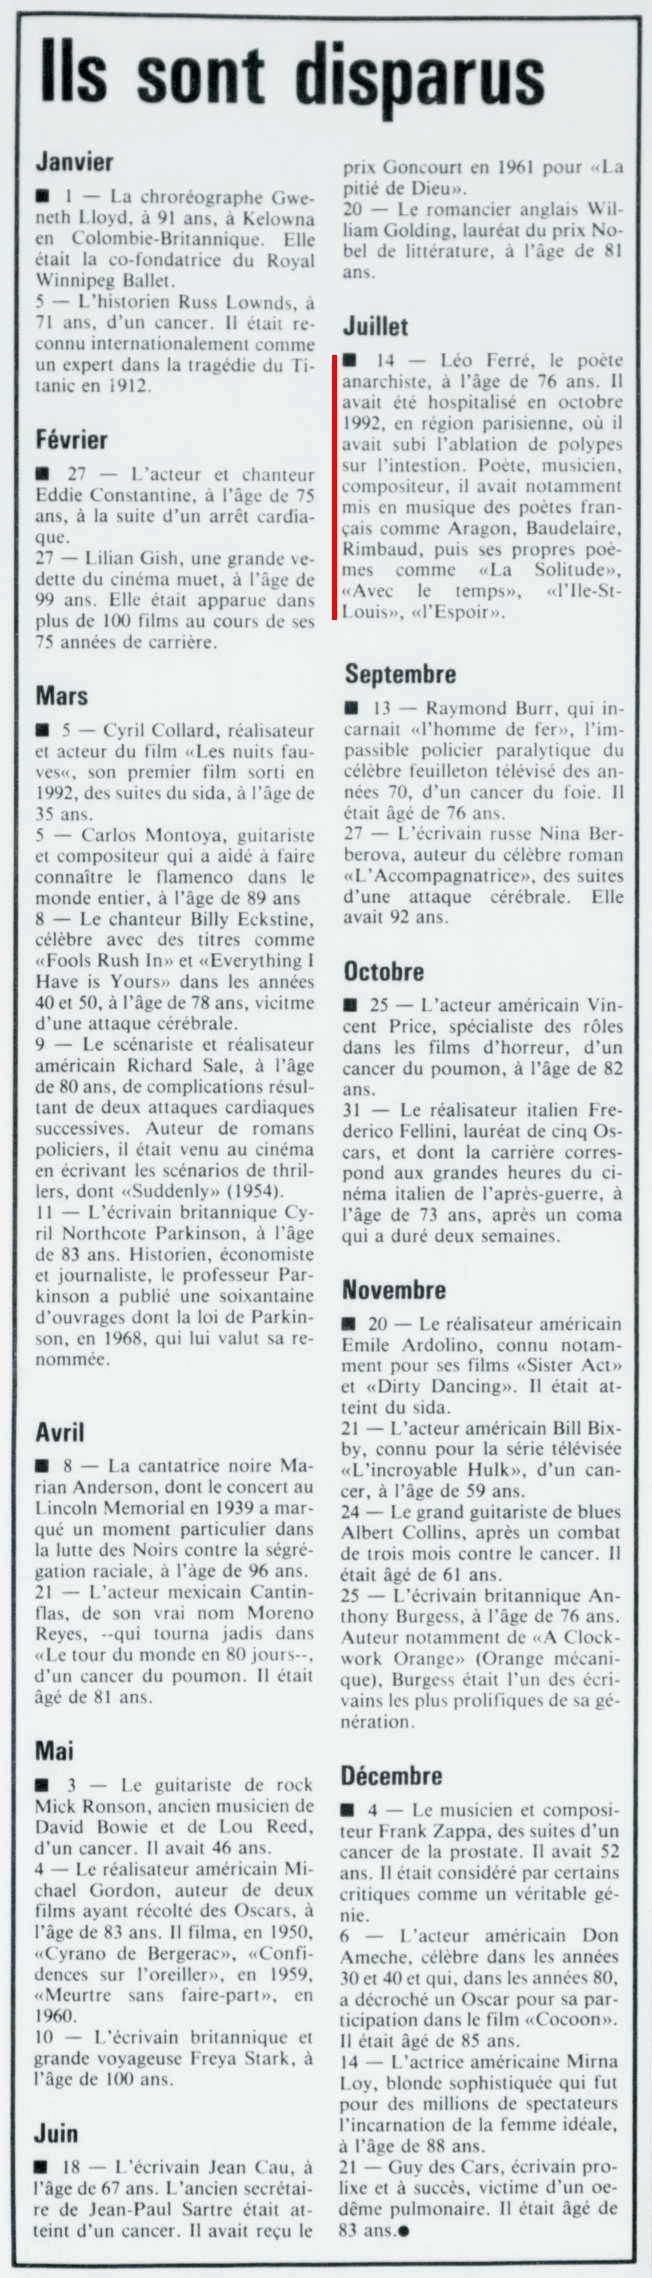 Léo Ferré - Le nouvelliste, 1920-, mercredi 29 décembre 1993